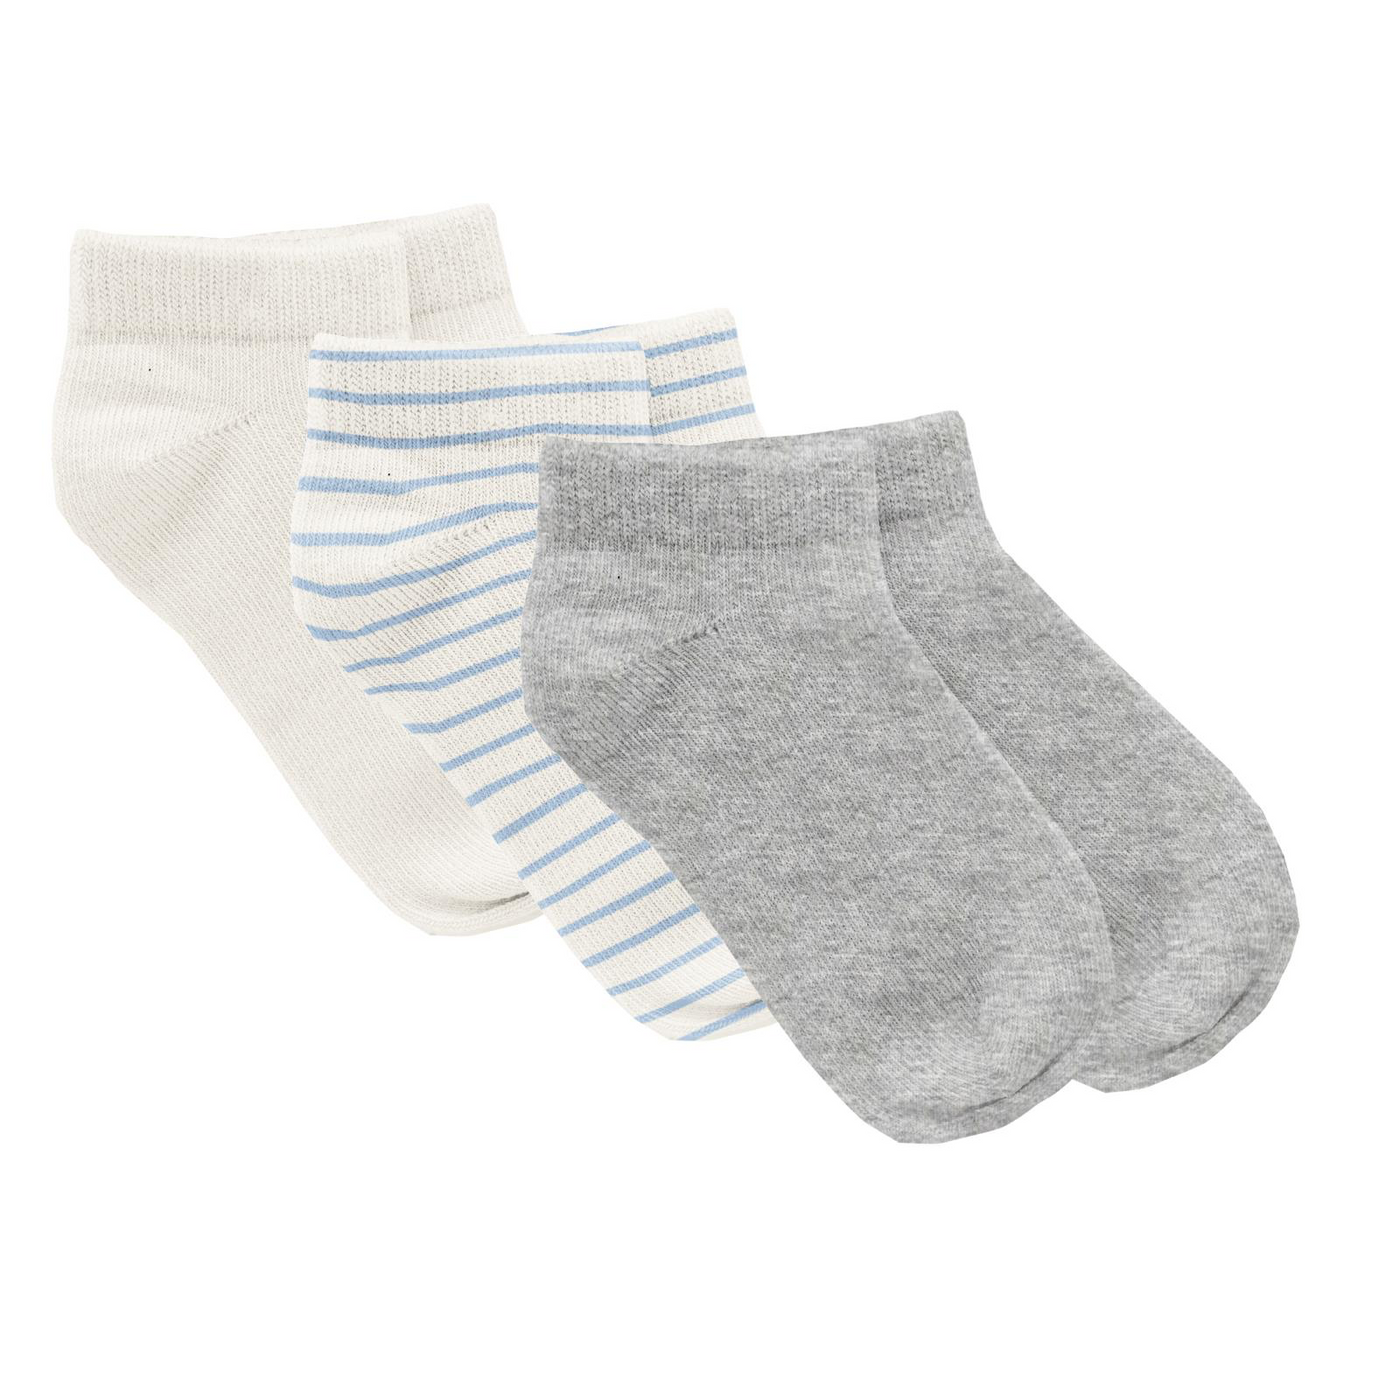 Kickee Pants Ankle Socks Set of 3: Solid Heathered Mist, Pond Sweet Stripe & Natural